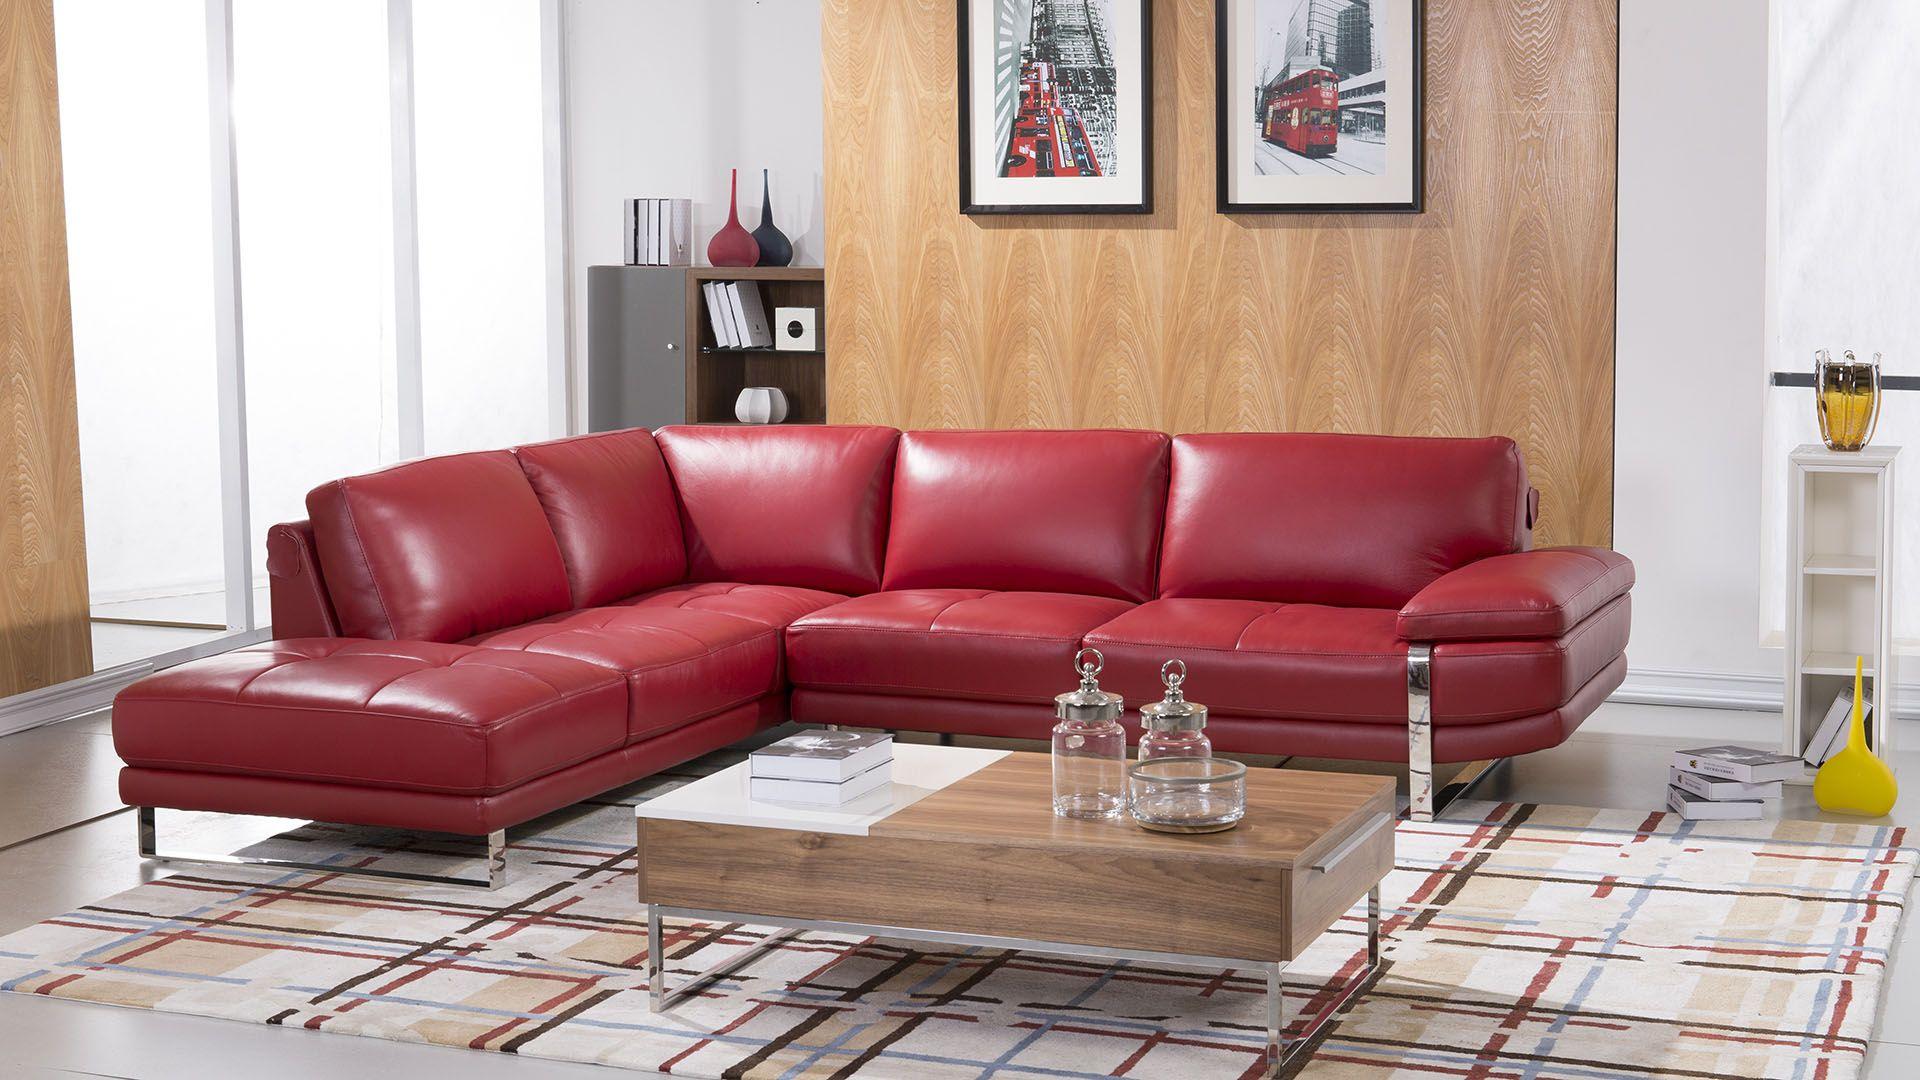 American Eagle Furniture EK-L025-RED Sectional Sofa